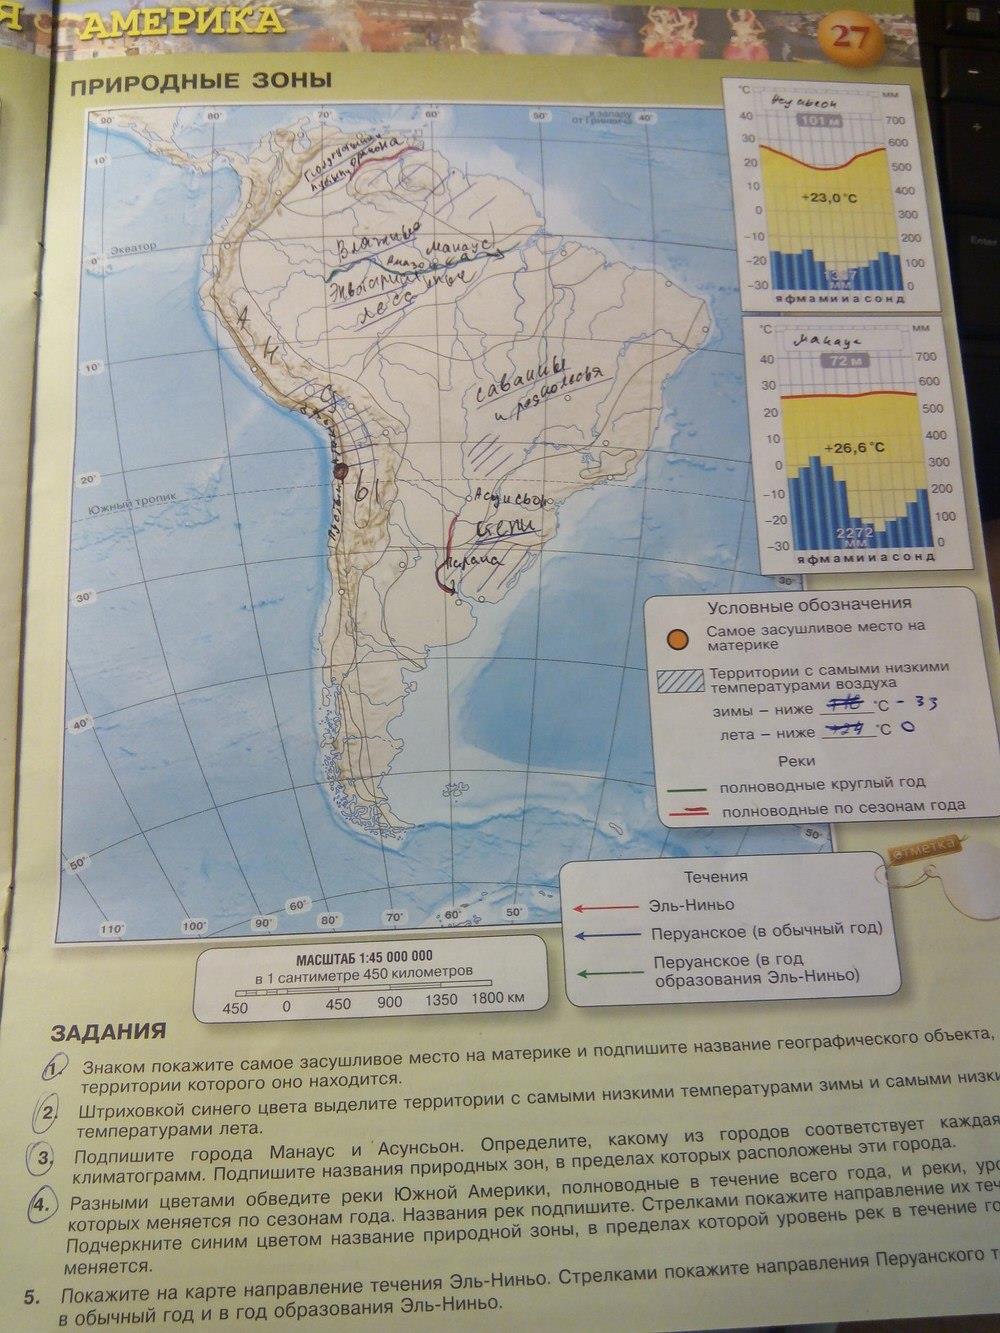 Контурные карты 7 класс география стр 27. География 7 класс контурные карты стр 27. Карта Южной Америки 7 класс география. Карта по географии 7 класс Южная Америка.